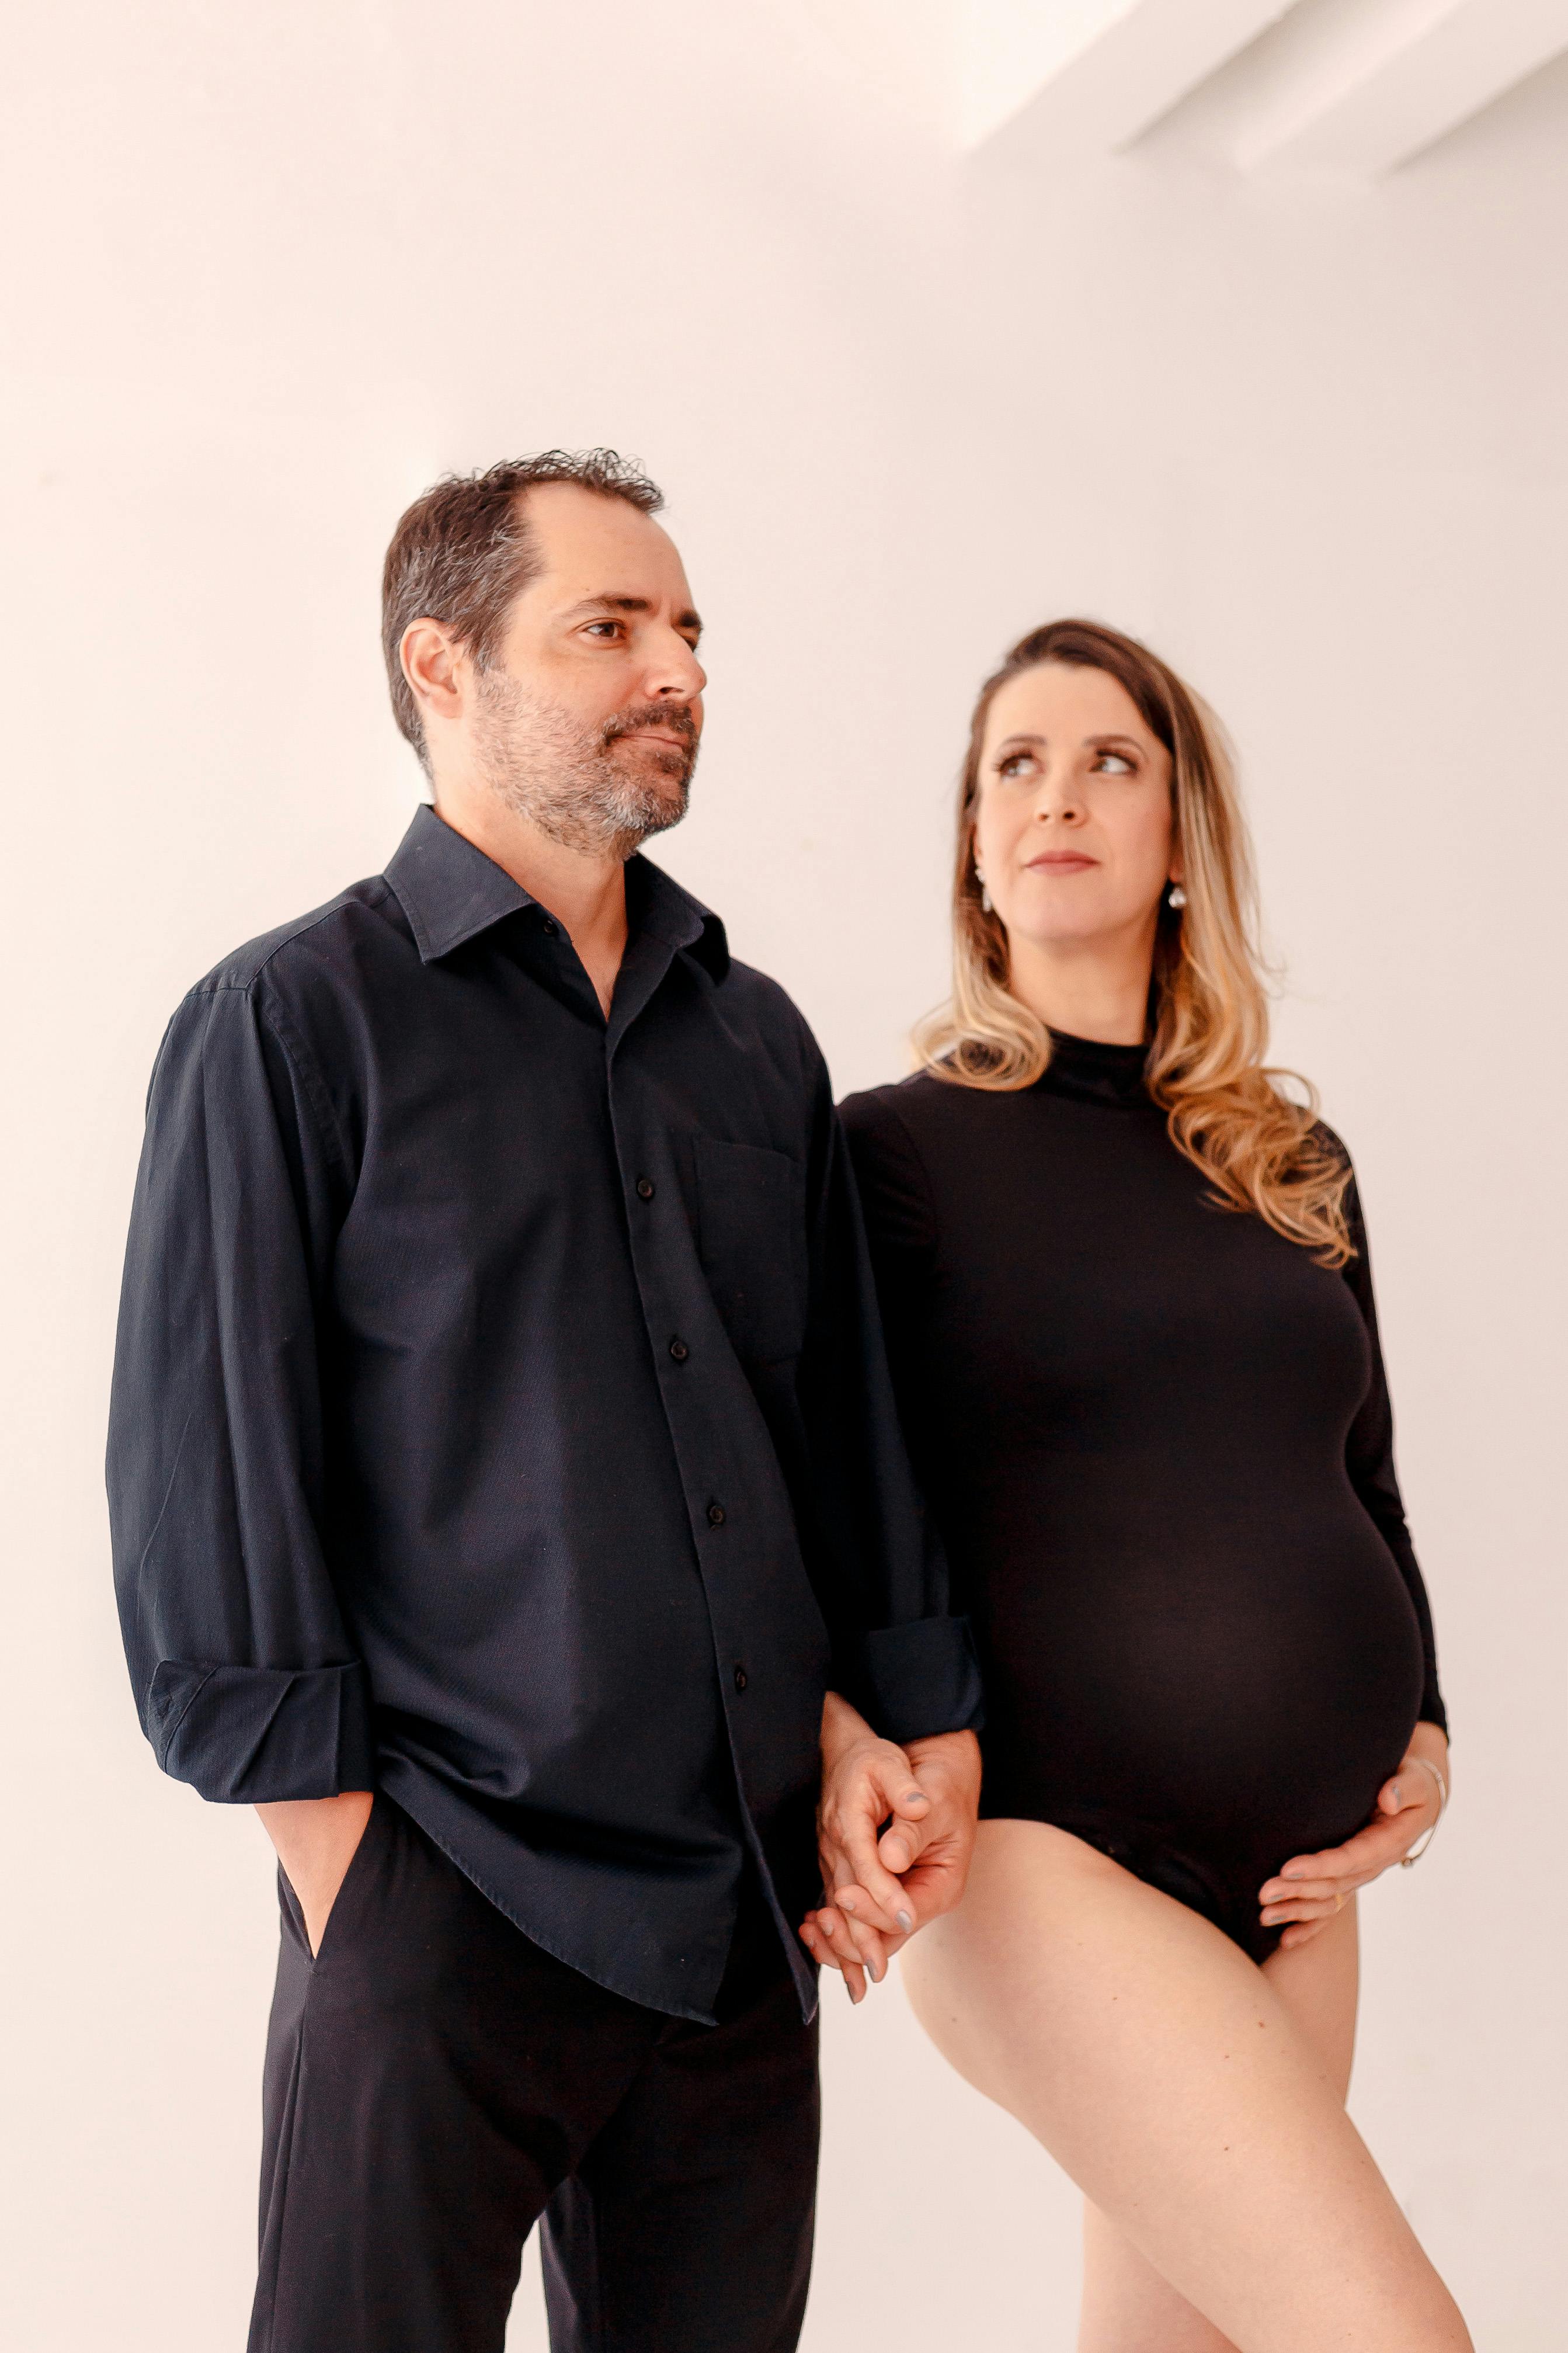 Ein aufgeregtes Paar posiert zusammen mit der schwangeren Frau, die ihren Bauch hält | Quelle: Pexels